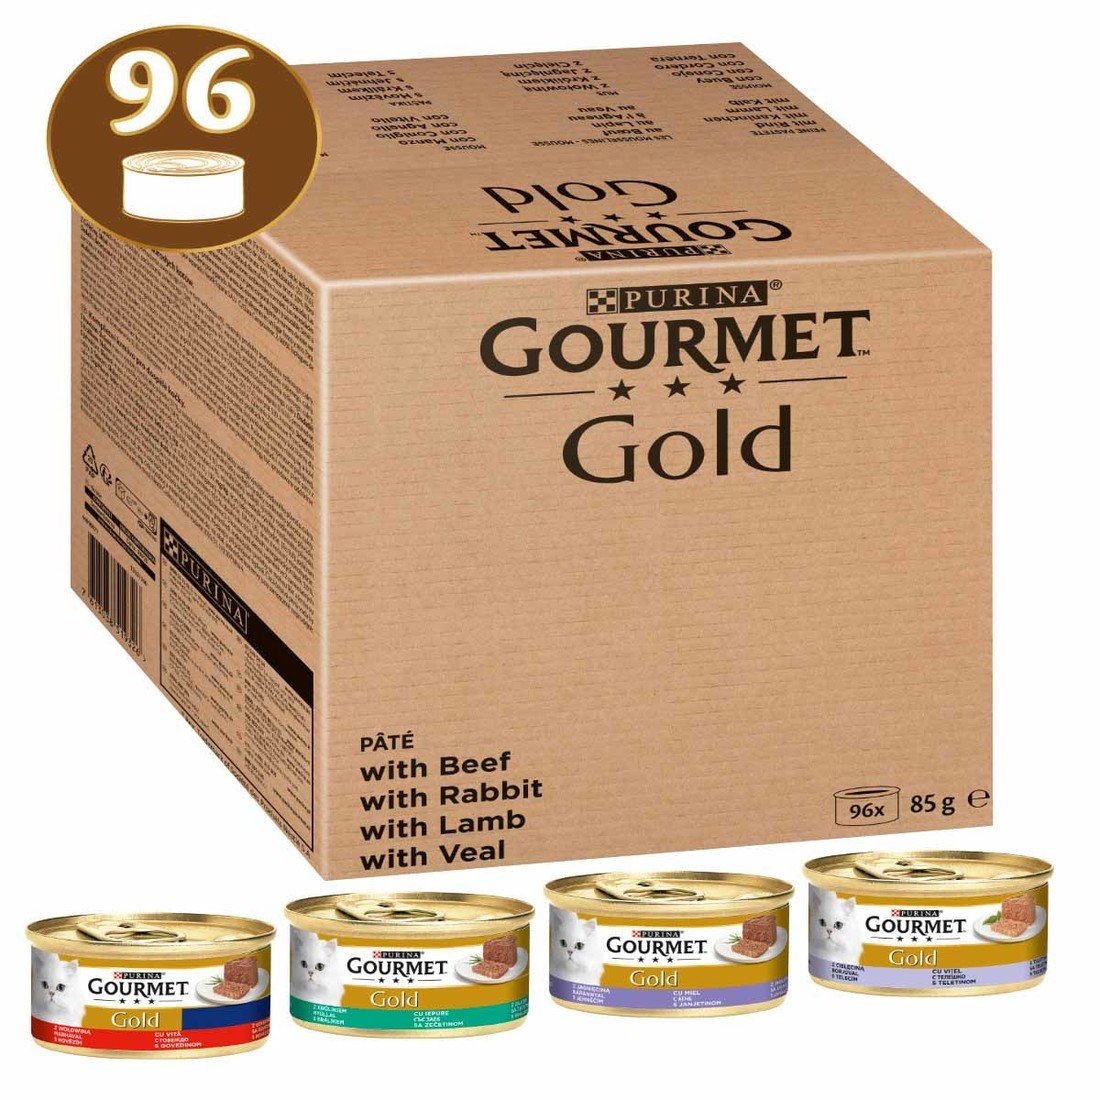 96 x 85 g Gourmet Gold za skvělou cenu!  - Kolekce v omáčce: hovězí, kuřecí a játra, losos a tuňák, krůtí a kachní